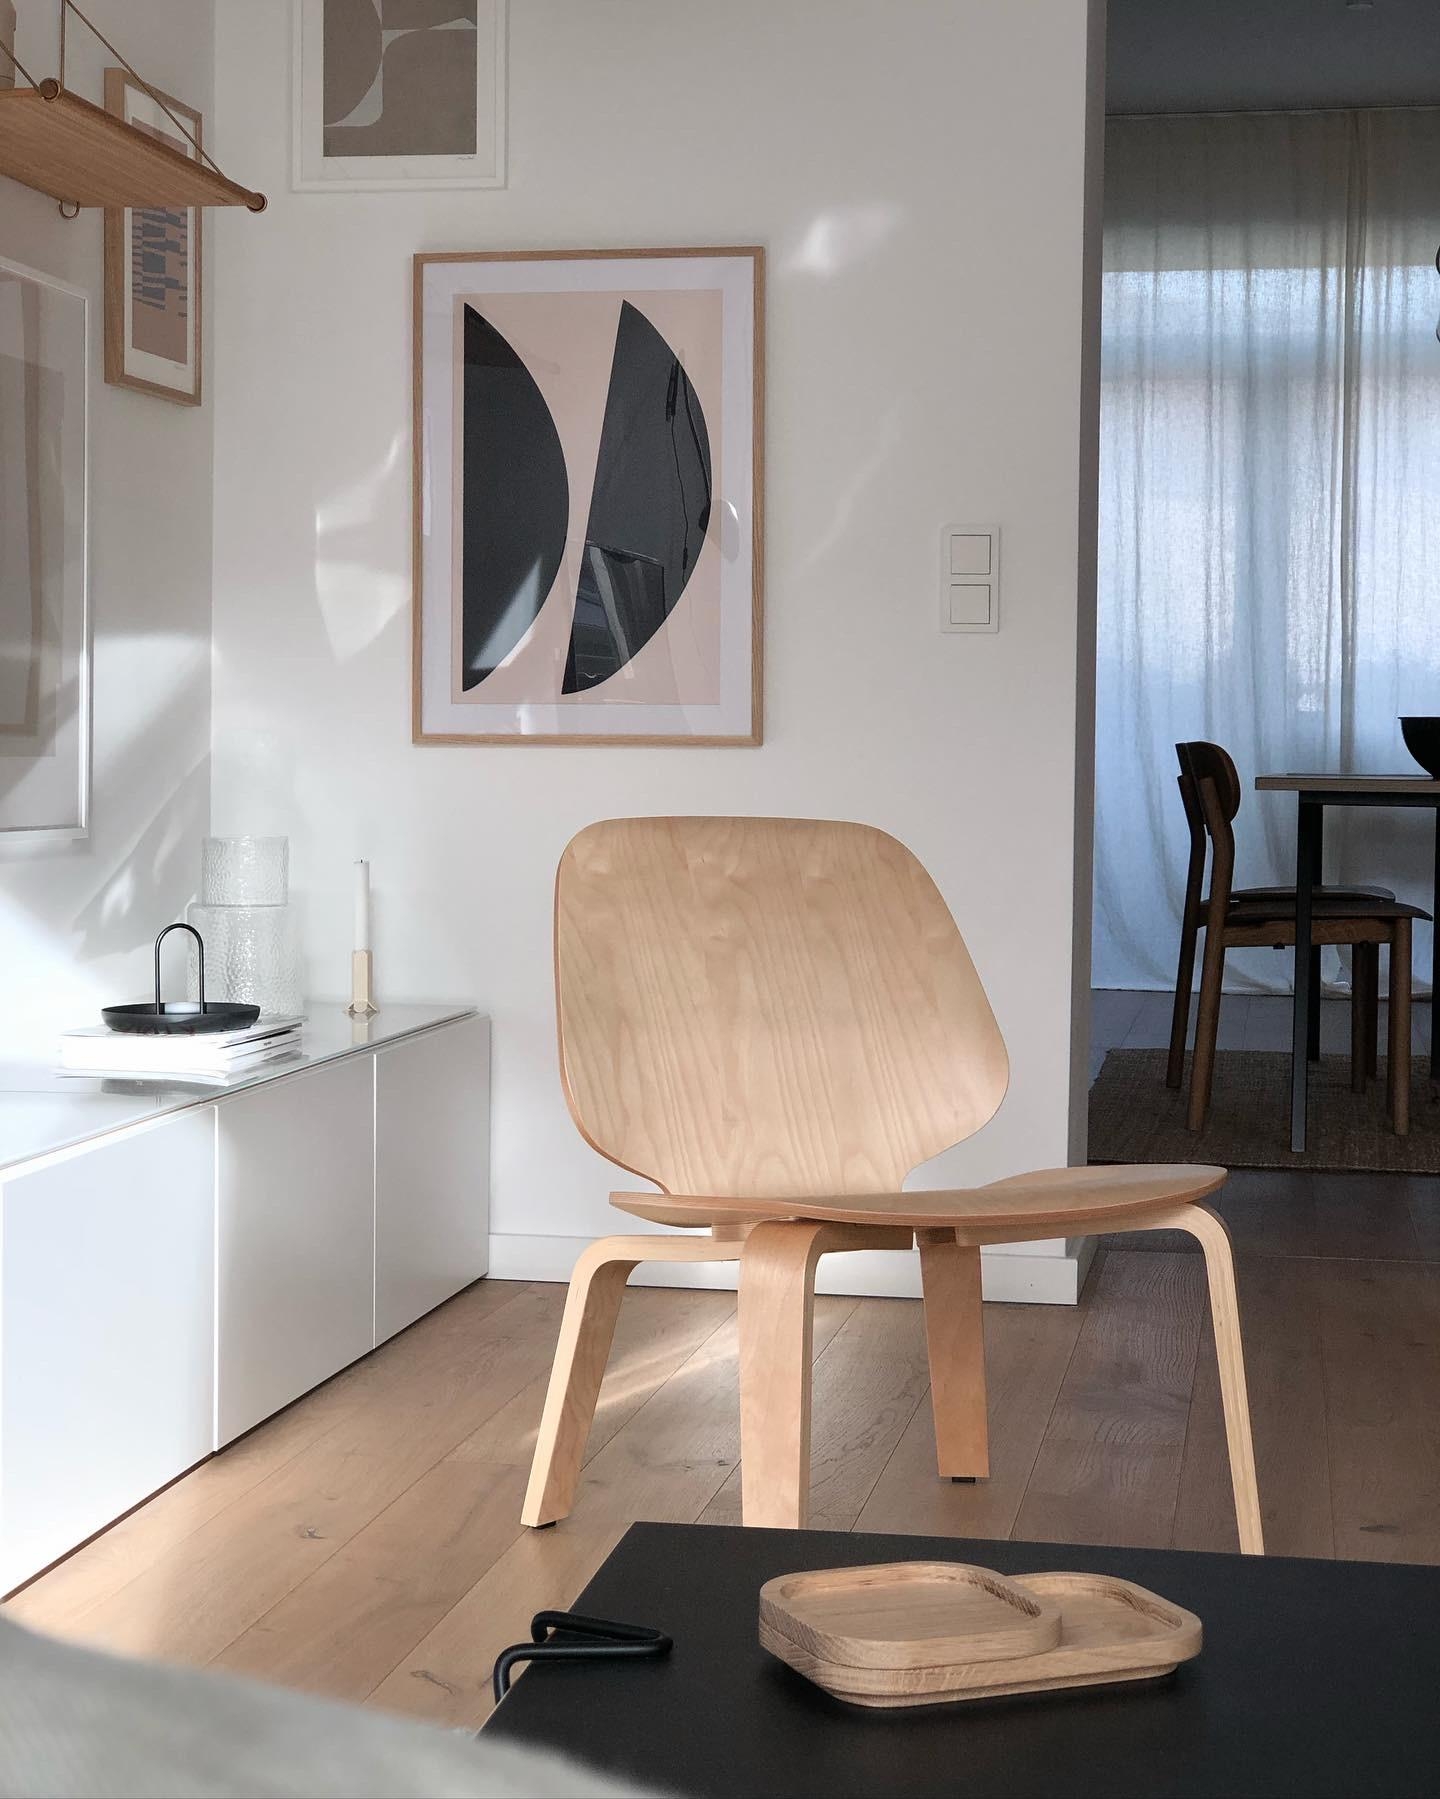 #stuhl #sessel #loungechair #wohnzimmer #livingroom #wanddeko #ikea #couchtisch #couchstyle #interior #scandi #skandi